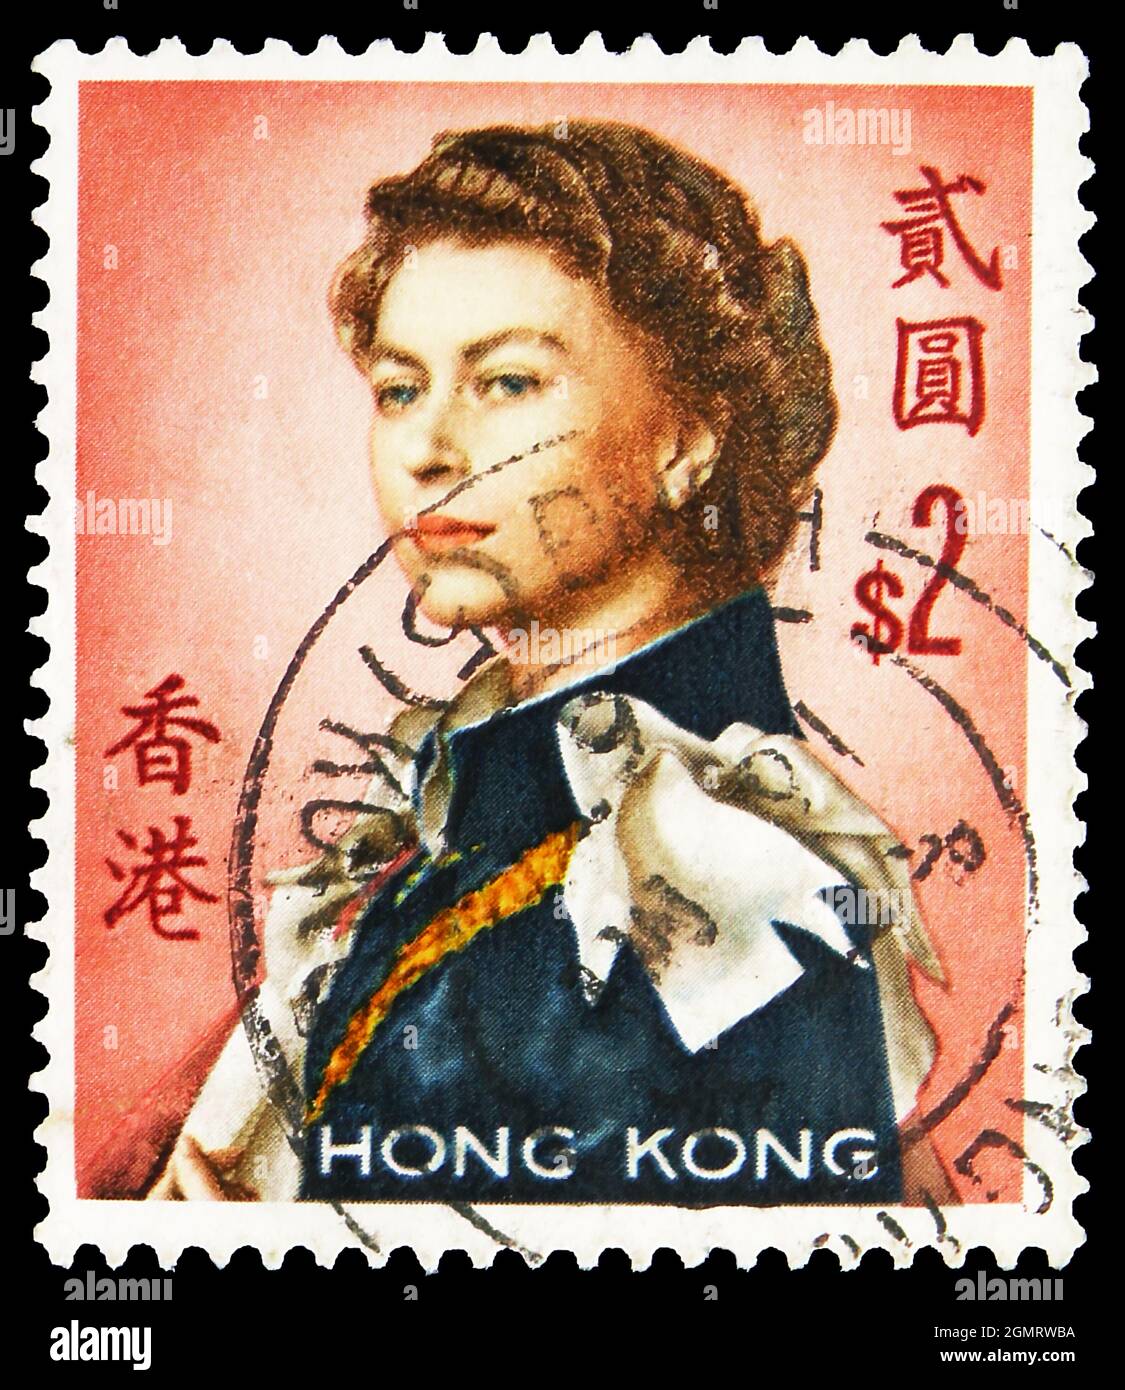 MOSCOU, RUSSIE - 6 NOVEMBRE 2019 : timbre-poste imprimé à Hong Kong montre la reine Elisabeth II, série 1962-1972, vers 1971 Banque D'Images